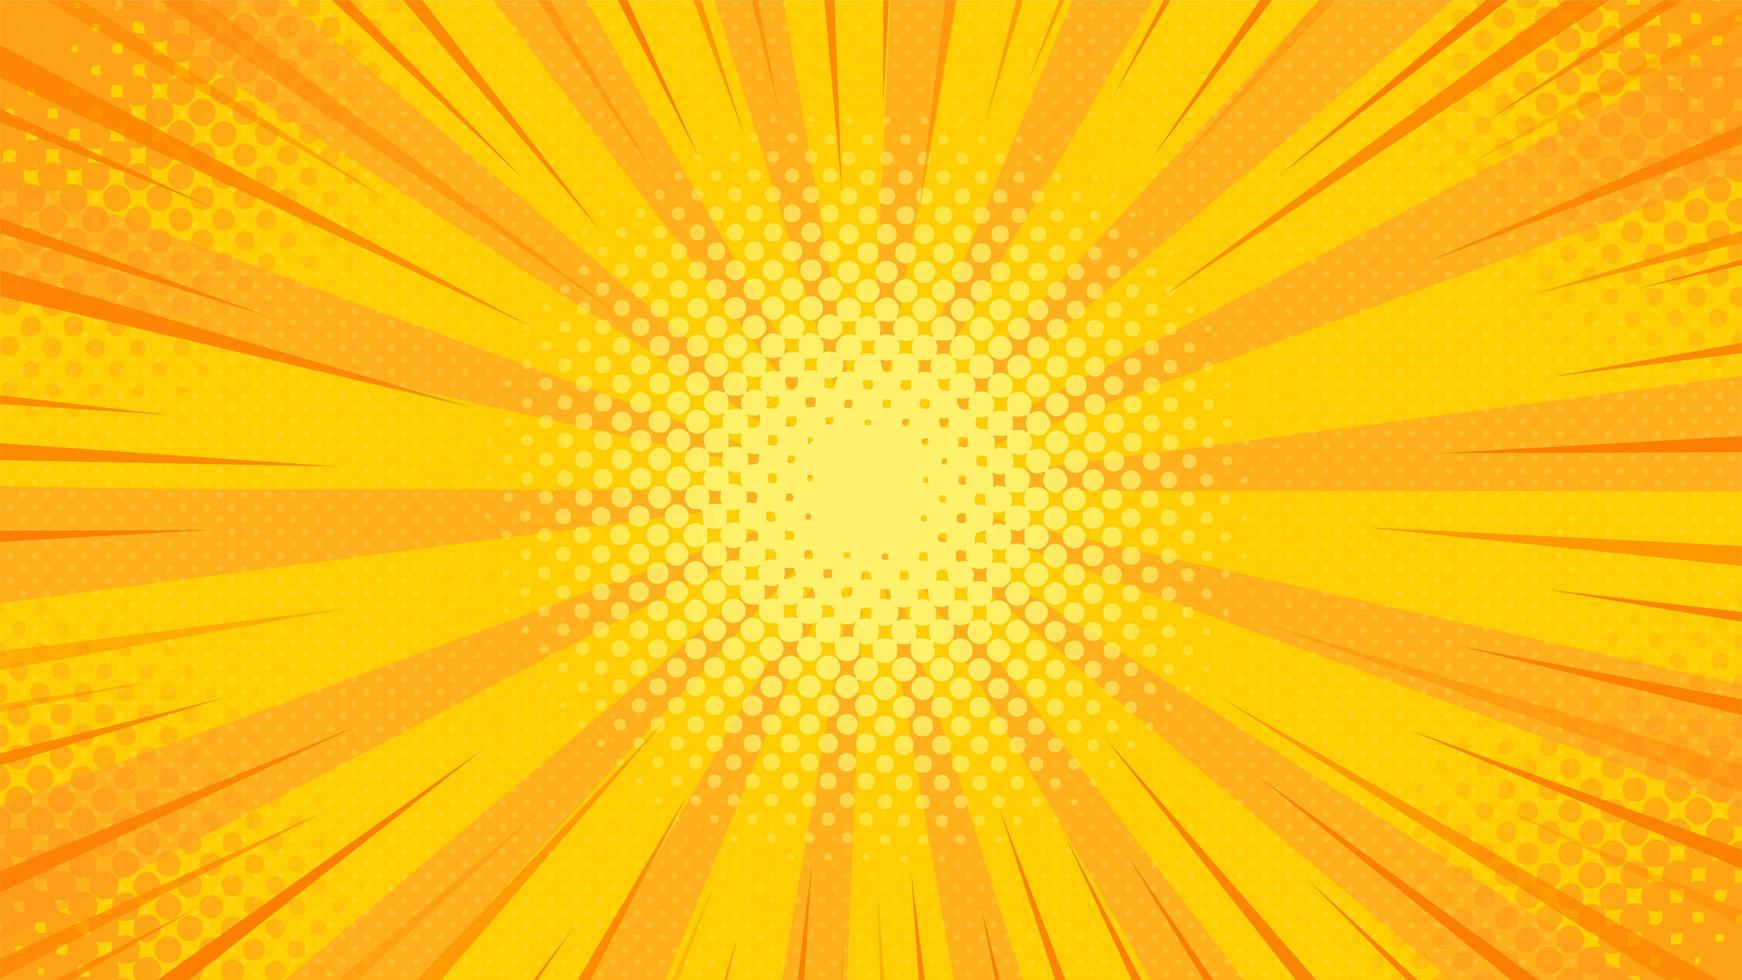 Fondo de arte pop con luz amarilla dispersa desde el centro. vector